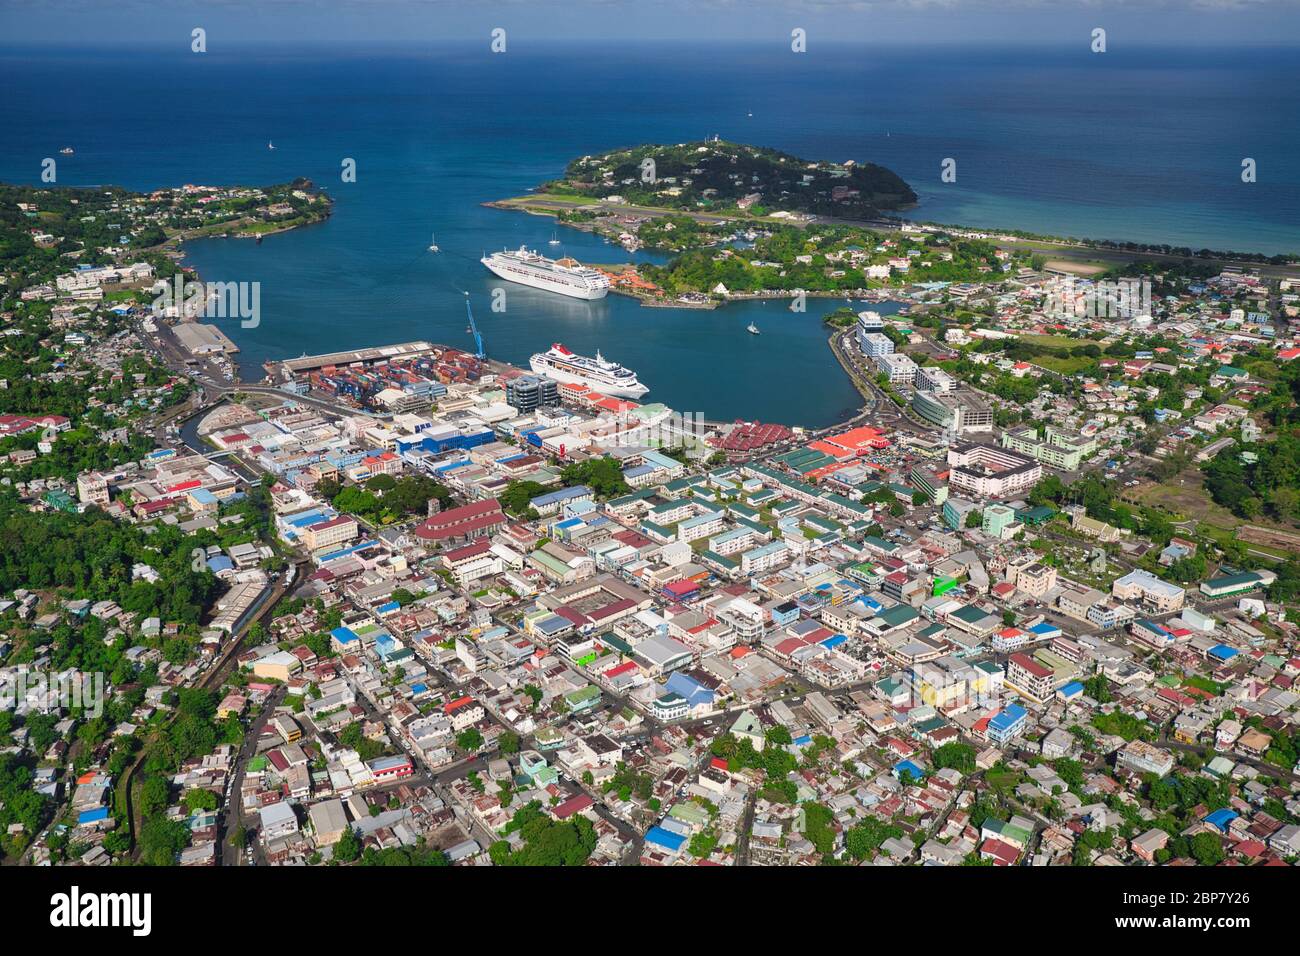 Vista aerea da elicottero di Castries, il porto principale e capitale dell'isola di Santa Lucia nei Caraibi, Antille. Il piccolo aeroporto è in alto a destra Foto Stock